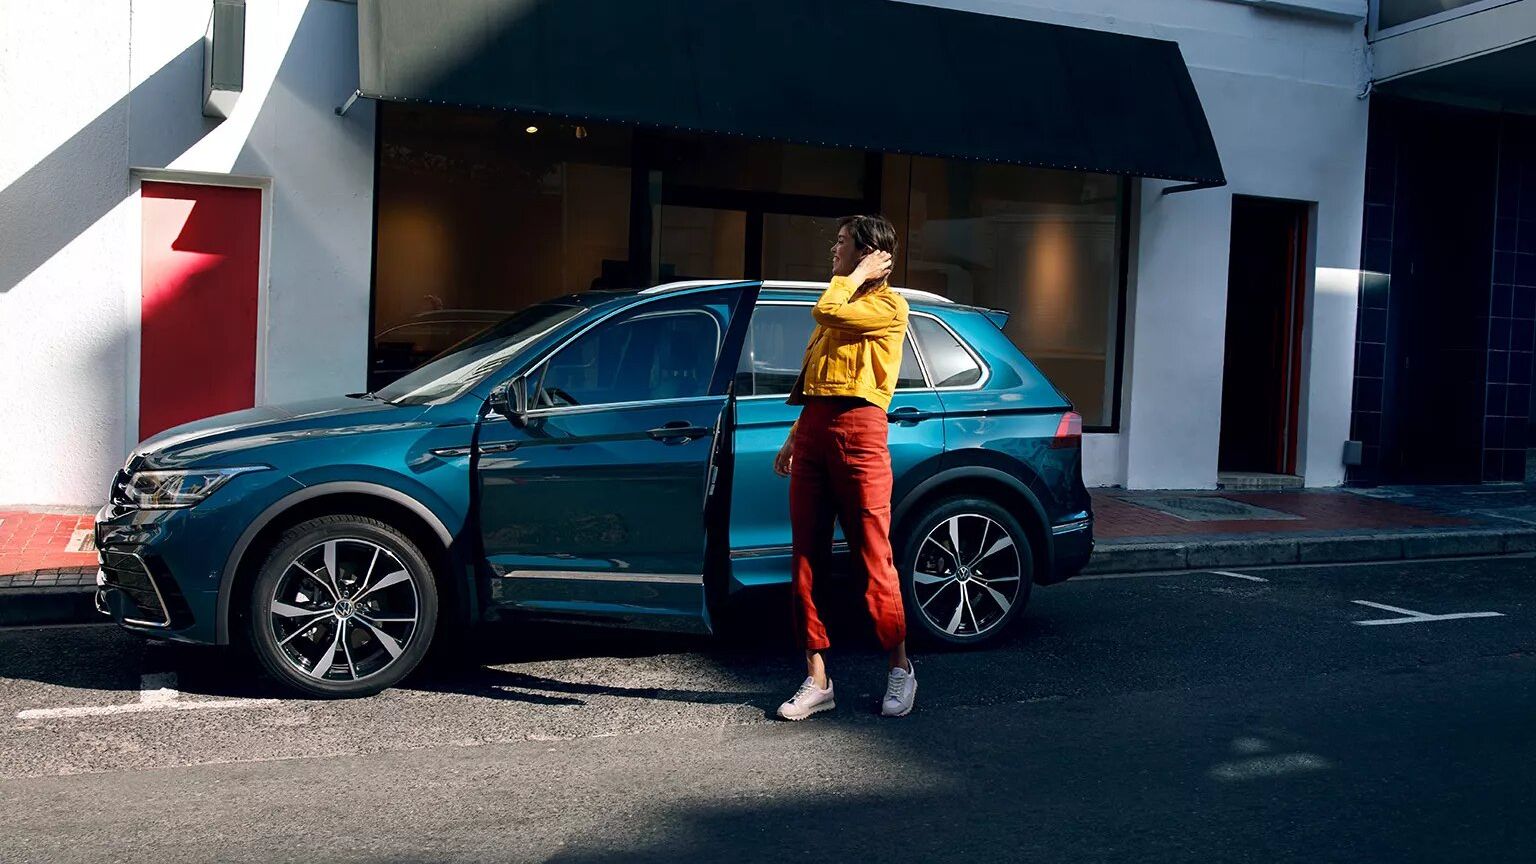 VW Tiguan in blau parkt vor Gebäude. Frau steht davor.